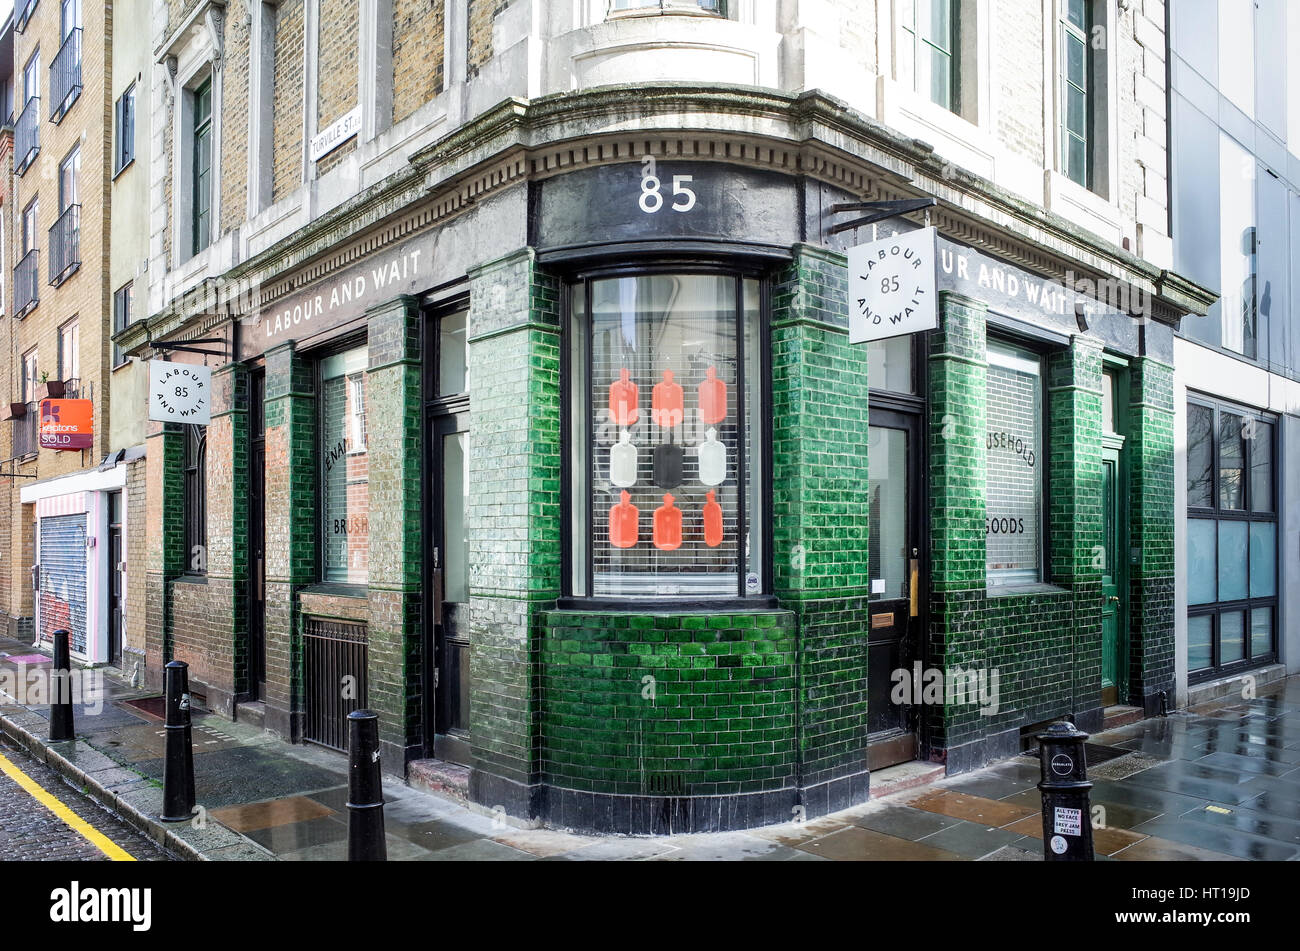 El trabajo y esperar vintage style hogar y tienda de ropa de moda en Londres Shoreditch zona Foto de stock